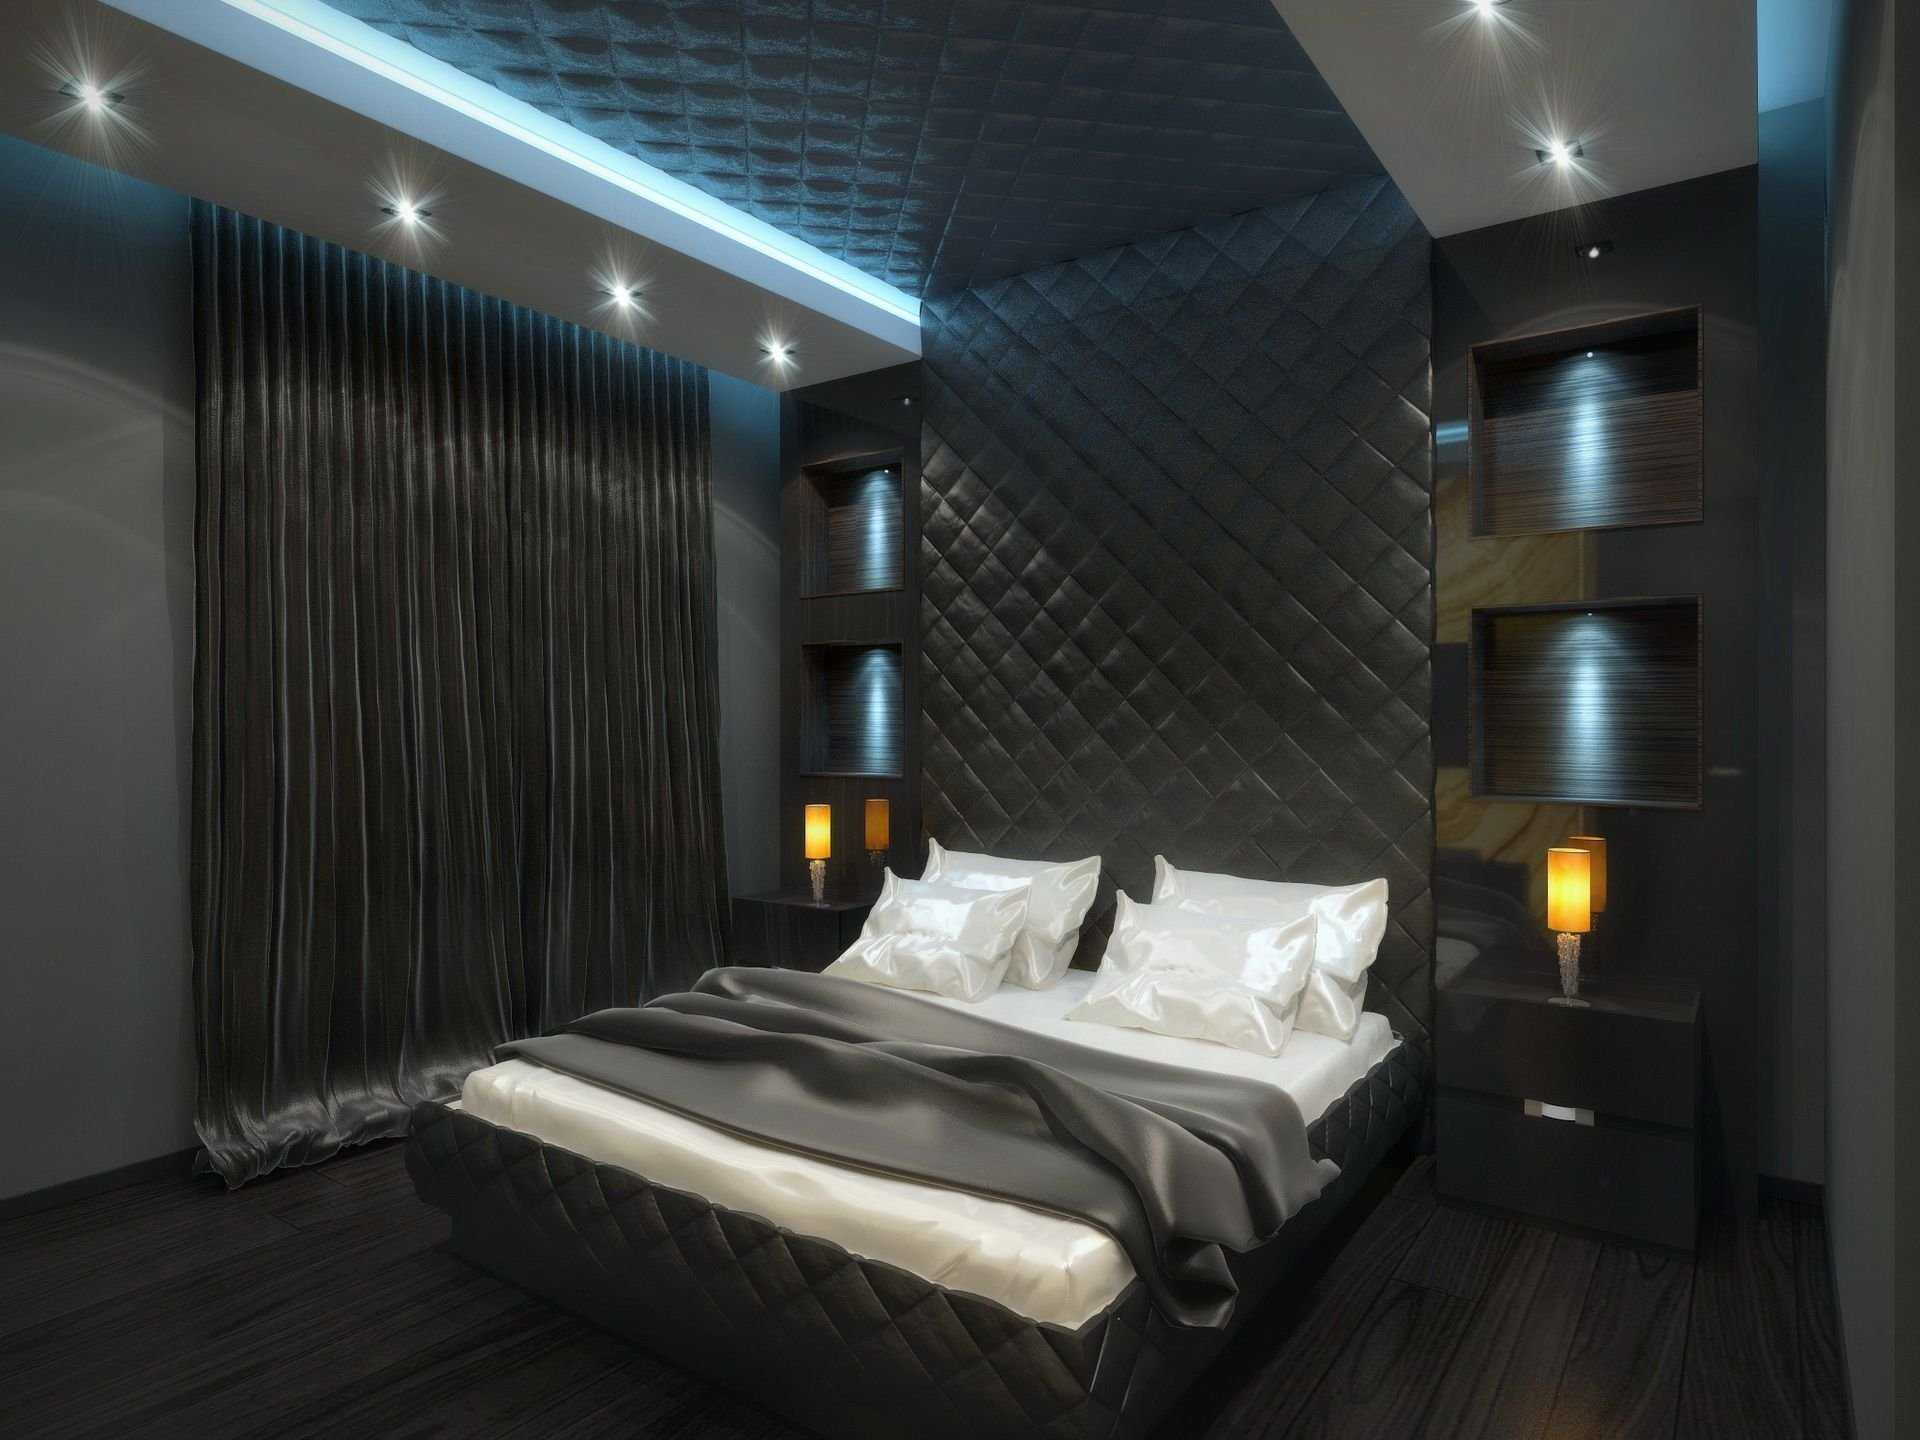 Дизайн спальни в темных тонах - варианты сочетания цветов, советы по выбору мебели и освещения, фото подборки